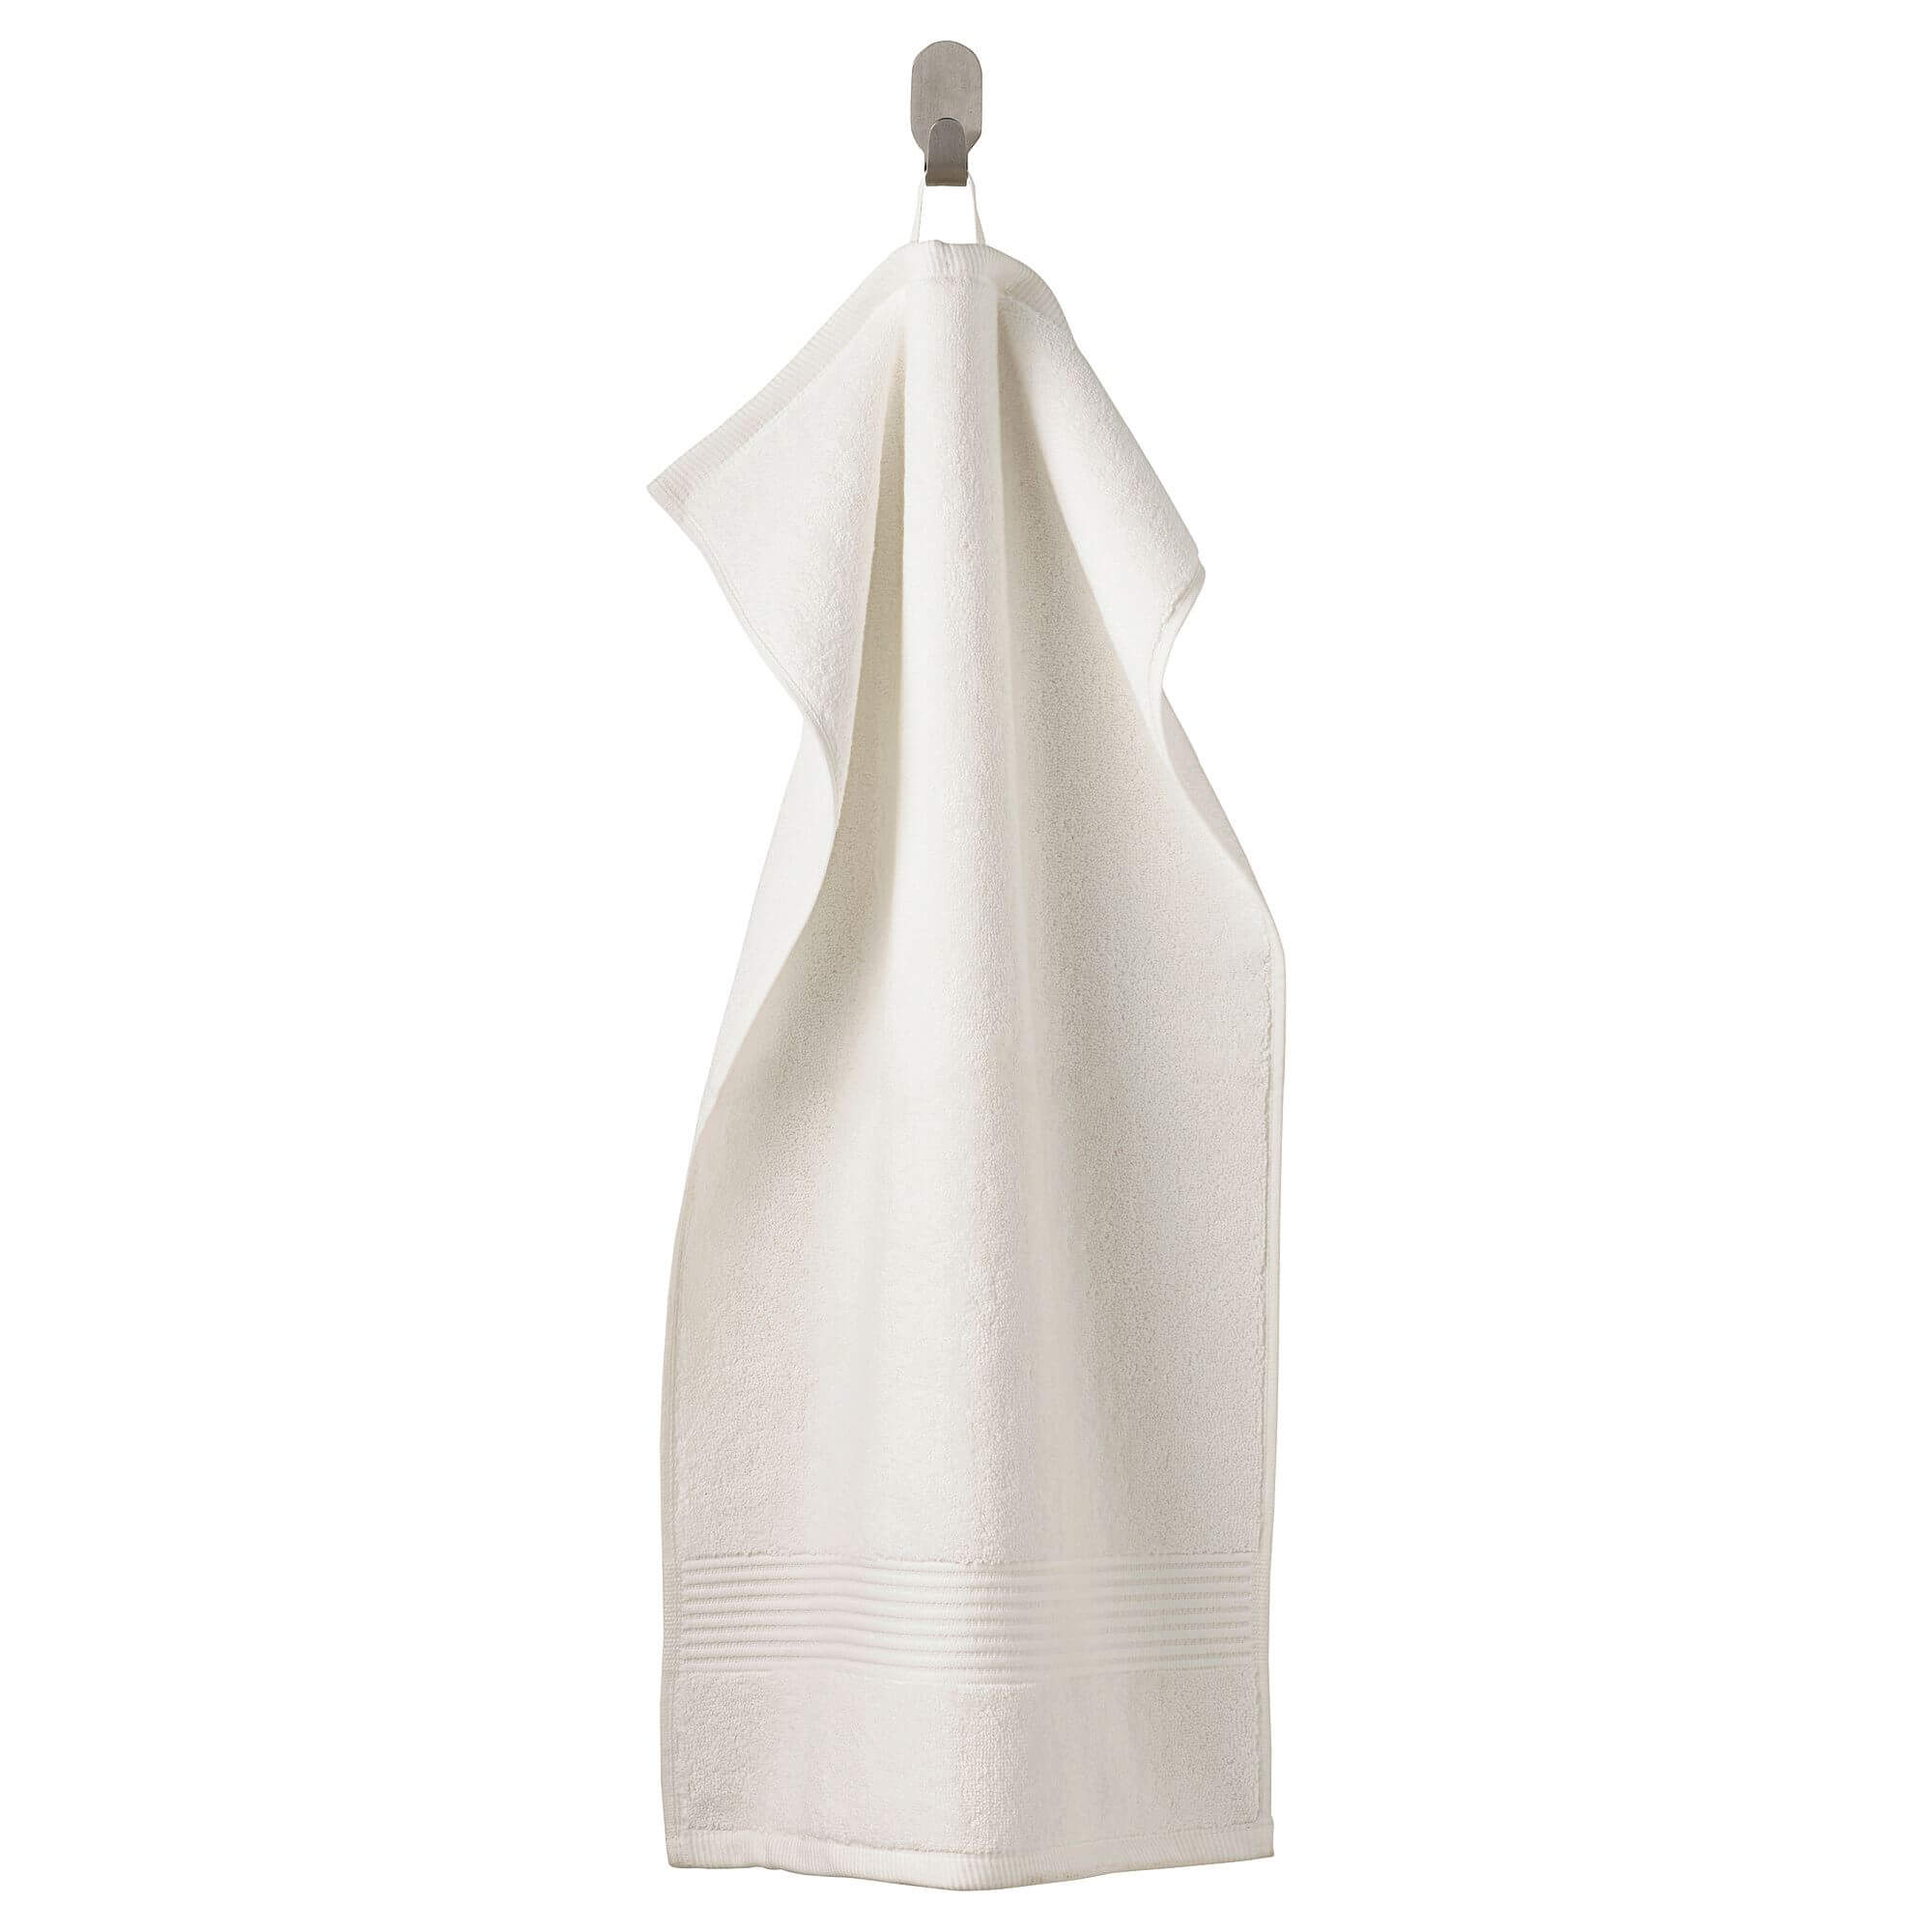 Полотенце для рук IKEA Fredriksjön 40x70 см, белый высококачественное толстое одноразовое спрессованное полотенце утолщенное водное быстрое полотенце для путешествий расширяемая мини са